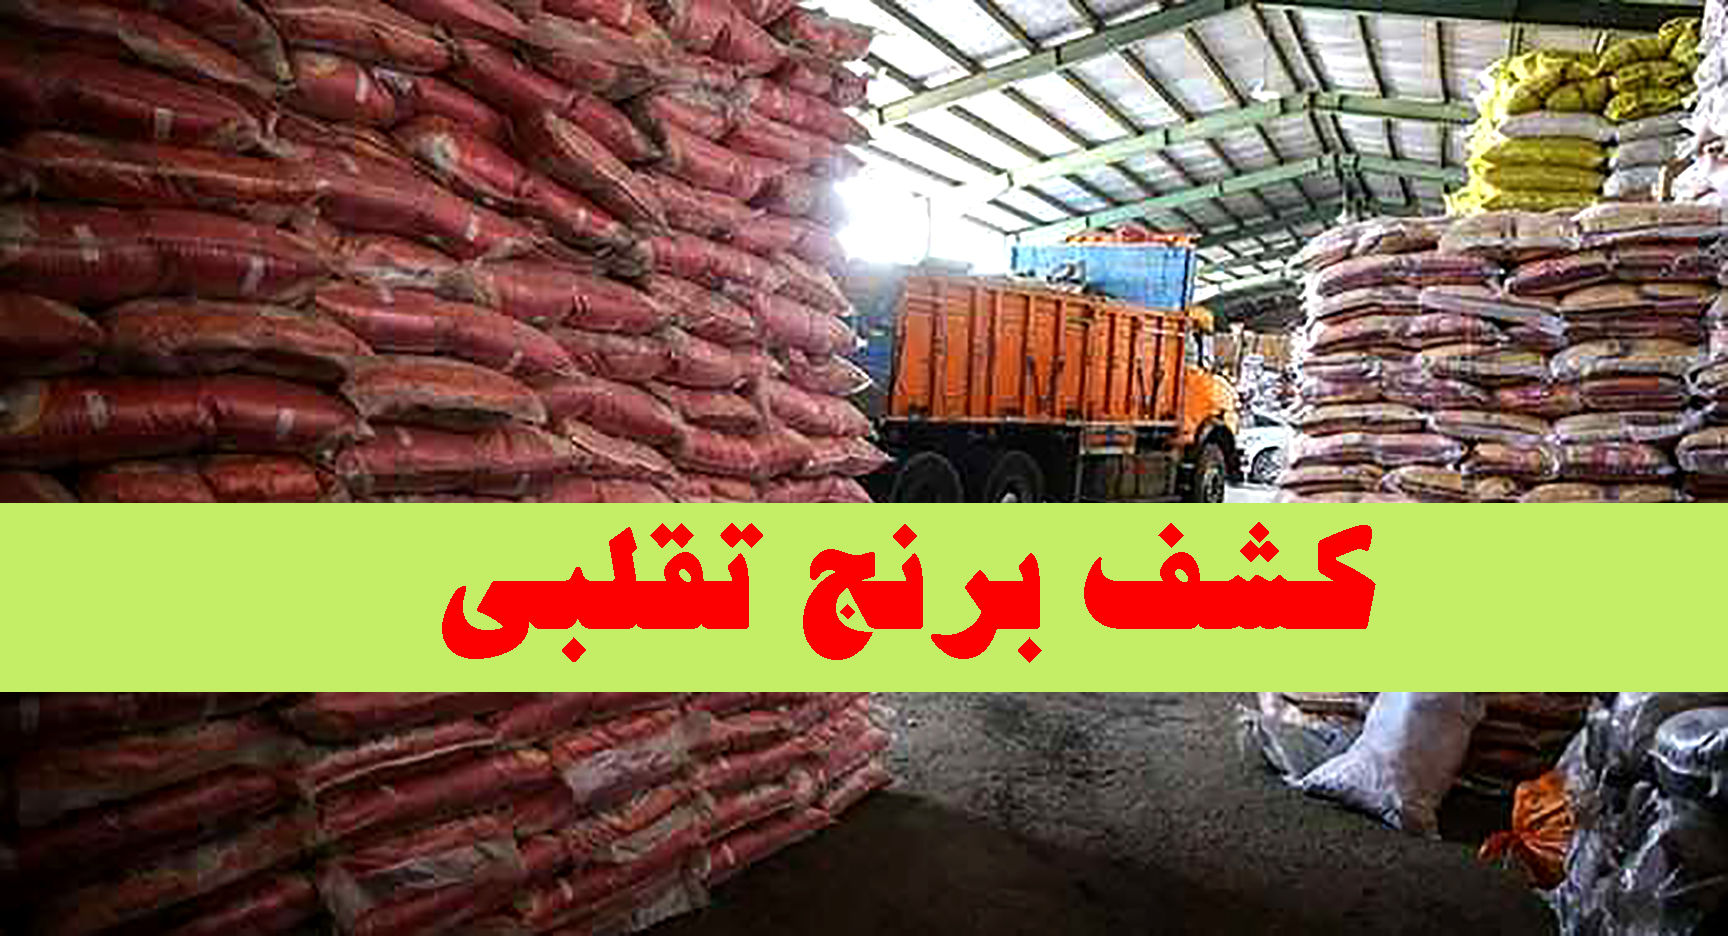 بیش از ۲۷ تن برنج تقلبی در حاشیه شهر مشهد کشف شد